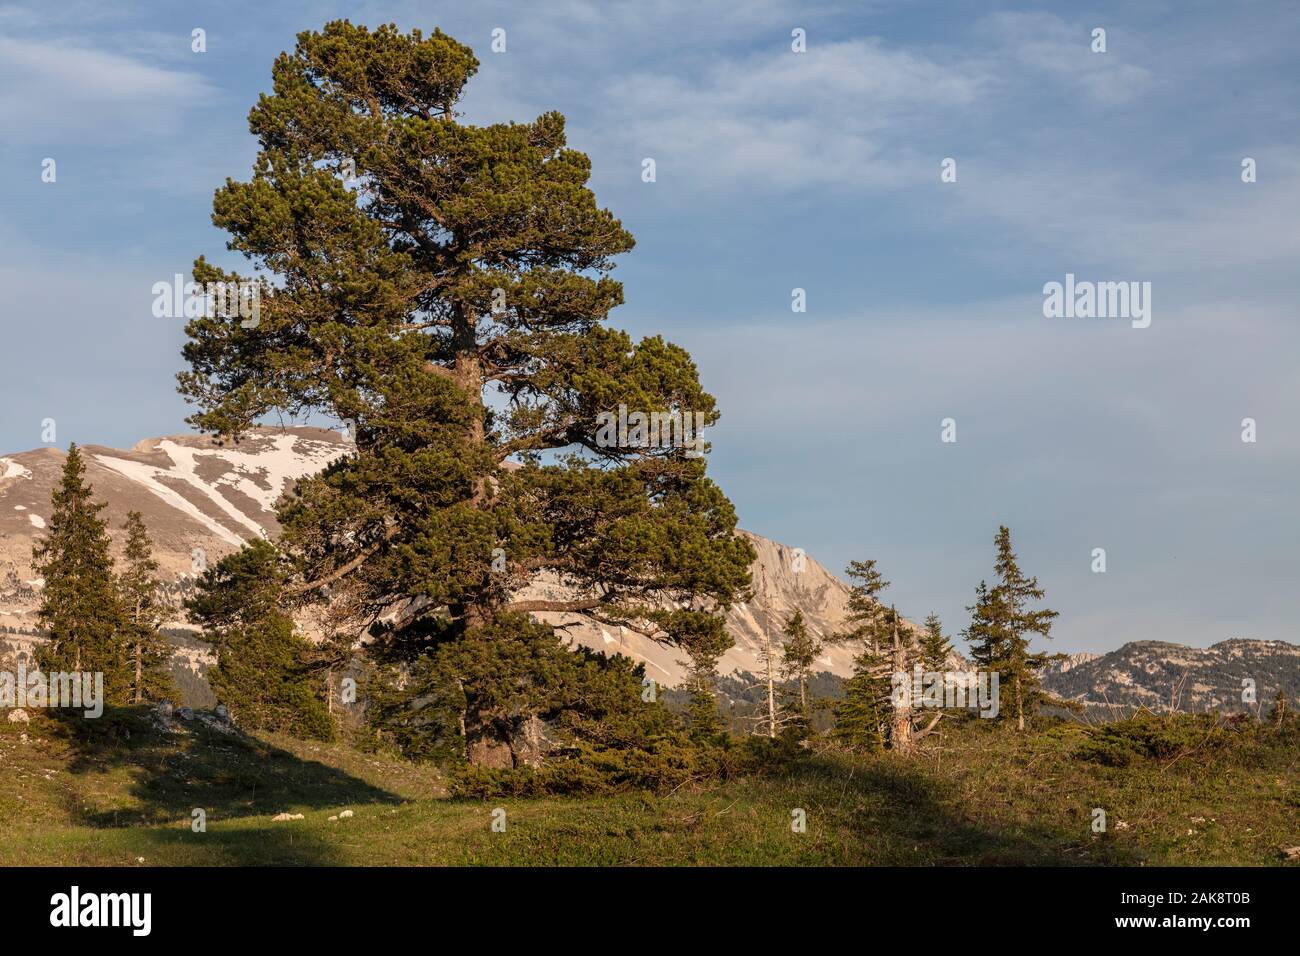 Mountain pine, Pinus mugo subsp. uncinata, on the high limestone plateau, Réserve naturelle des Hauts Plateaux du Vercors, Vercors mountains, France. Stock Photo